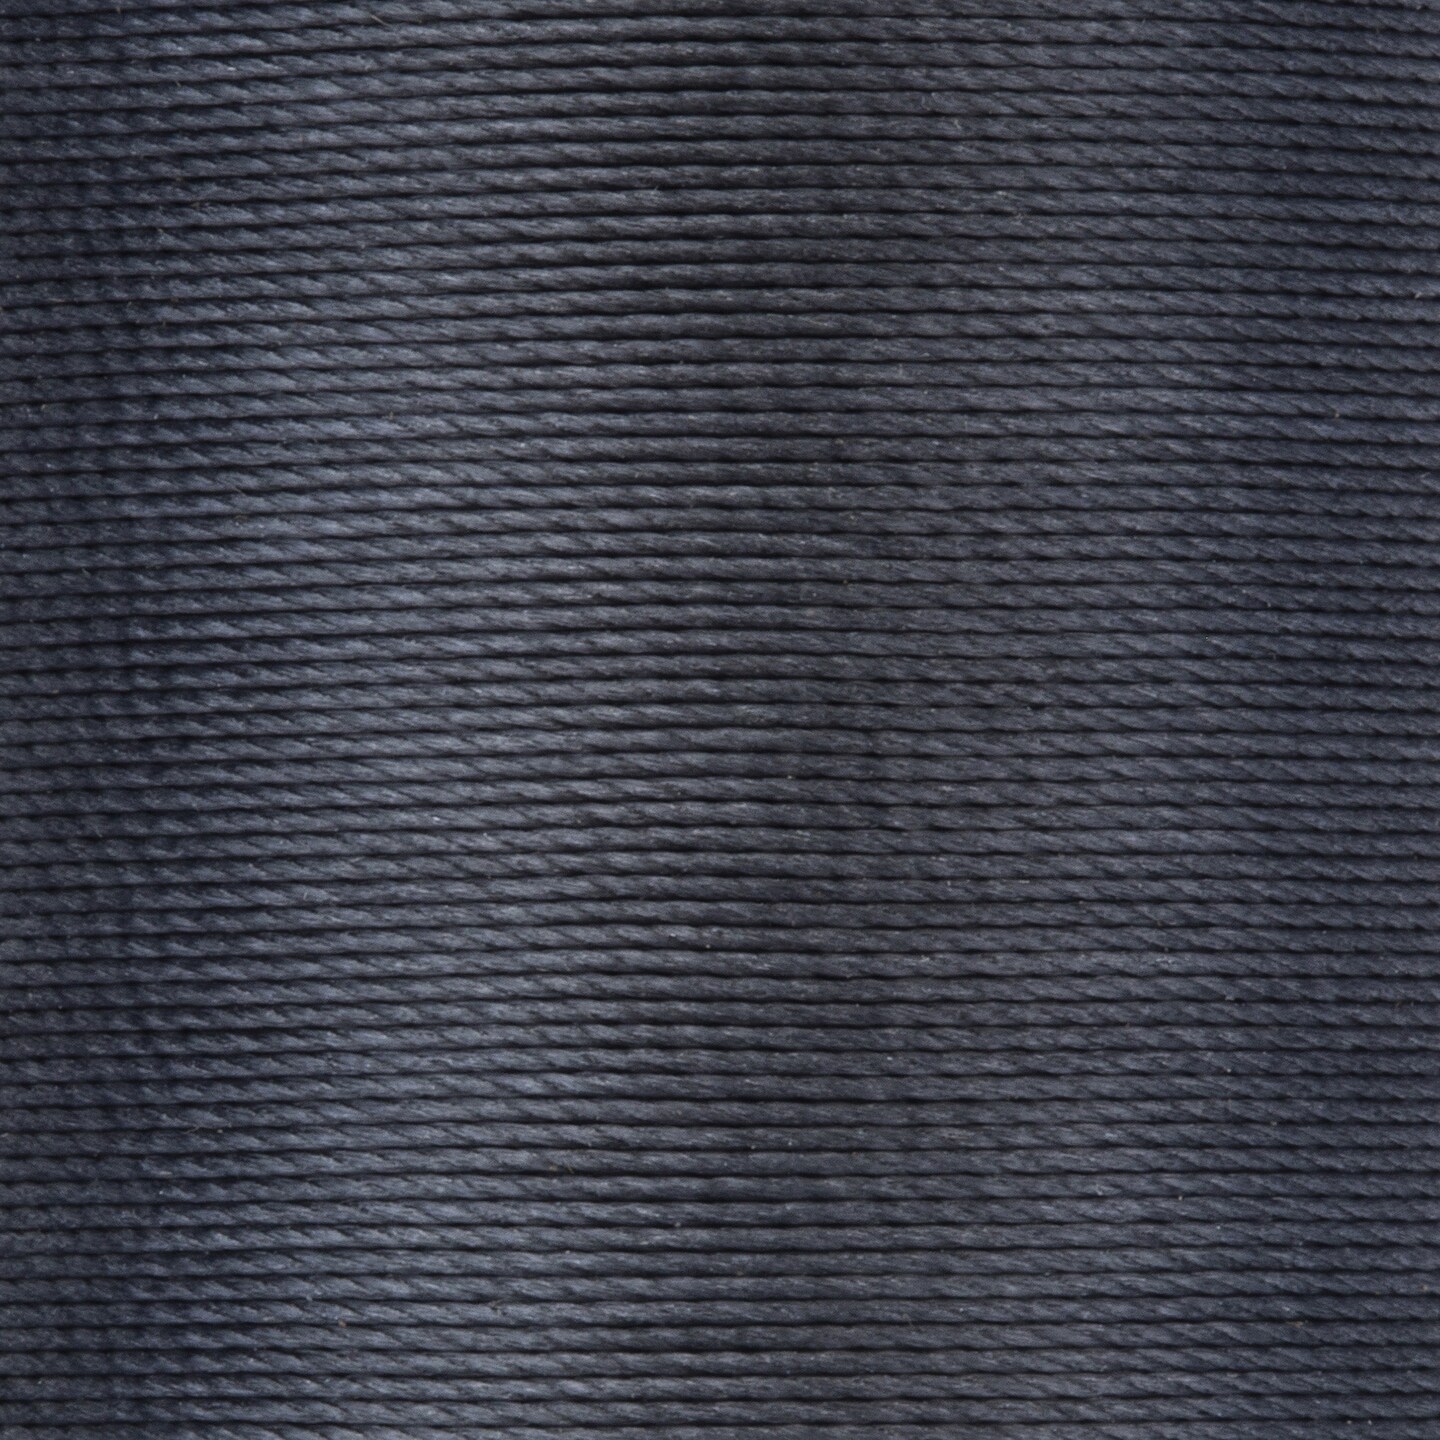 Coats Extra Strong Nylon Upholstery Thread 